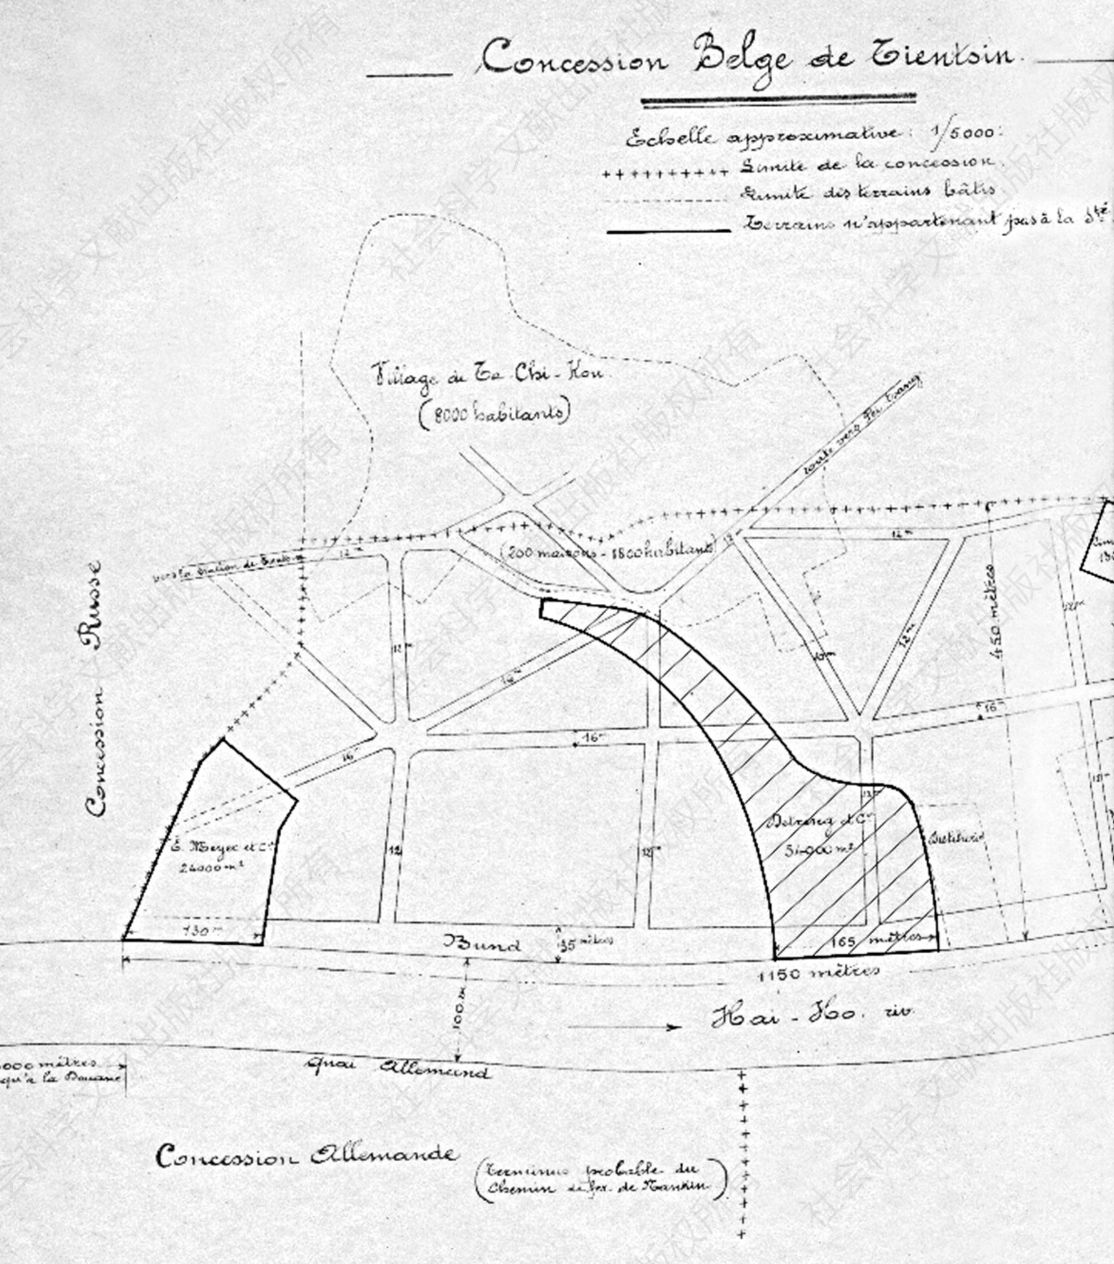 图7-6 天津比利时租界的规划示意图（图中央黑色阴影标出部分为德璀琳购买的土地，该图保存于比利时外交部档案馆）